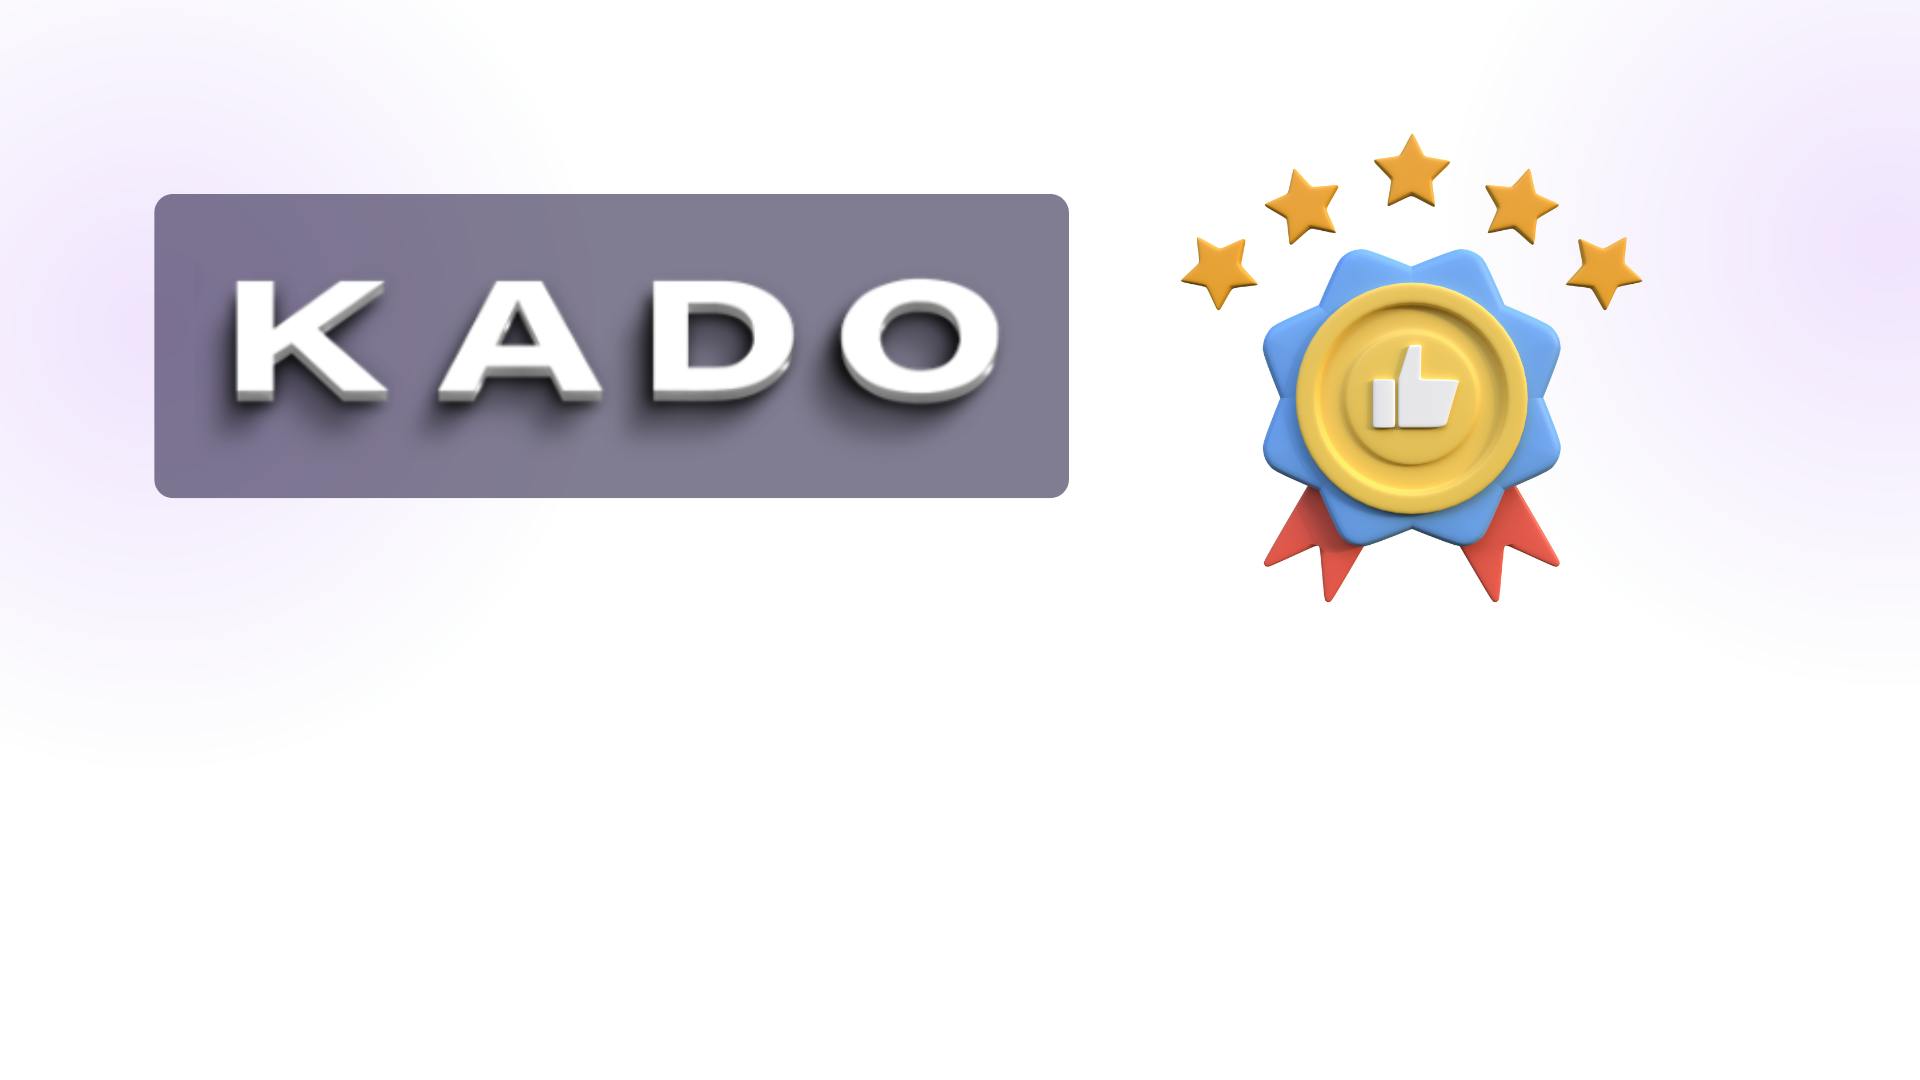 KADO logo showcase